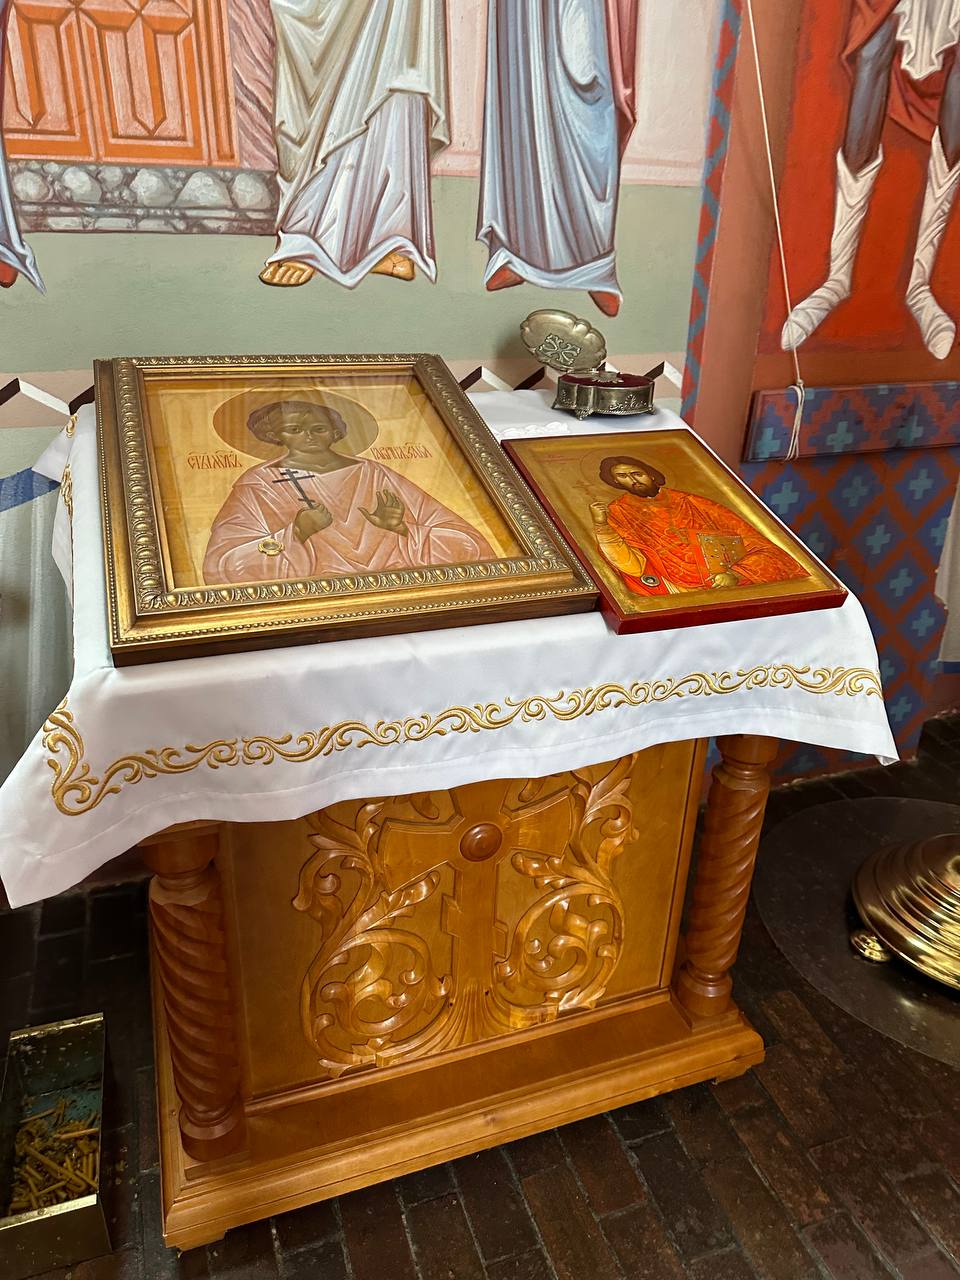 Польська православна церква у Вроцлаві: ексклюзивний фоторепортаж зсередини - фото 9